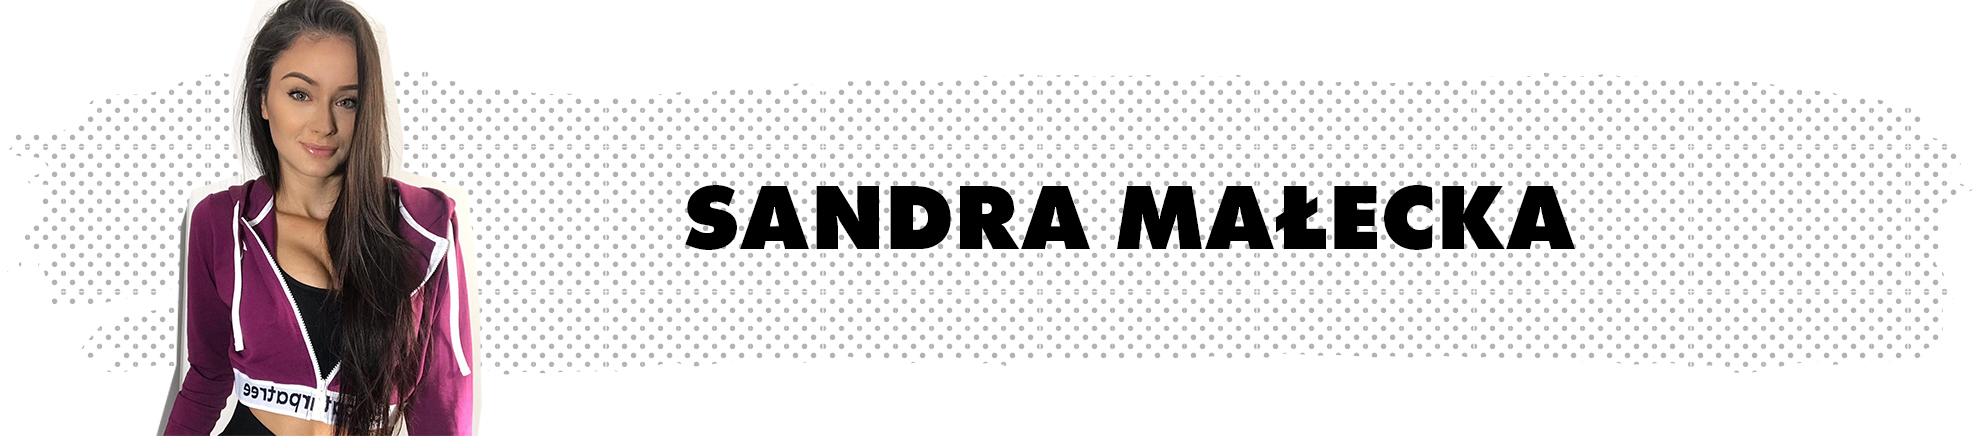 Sandra Małecka Ostentacyjna - Carpatree brand ambassador